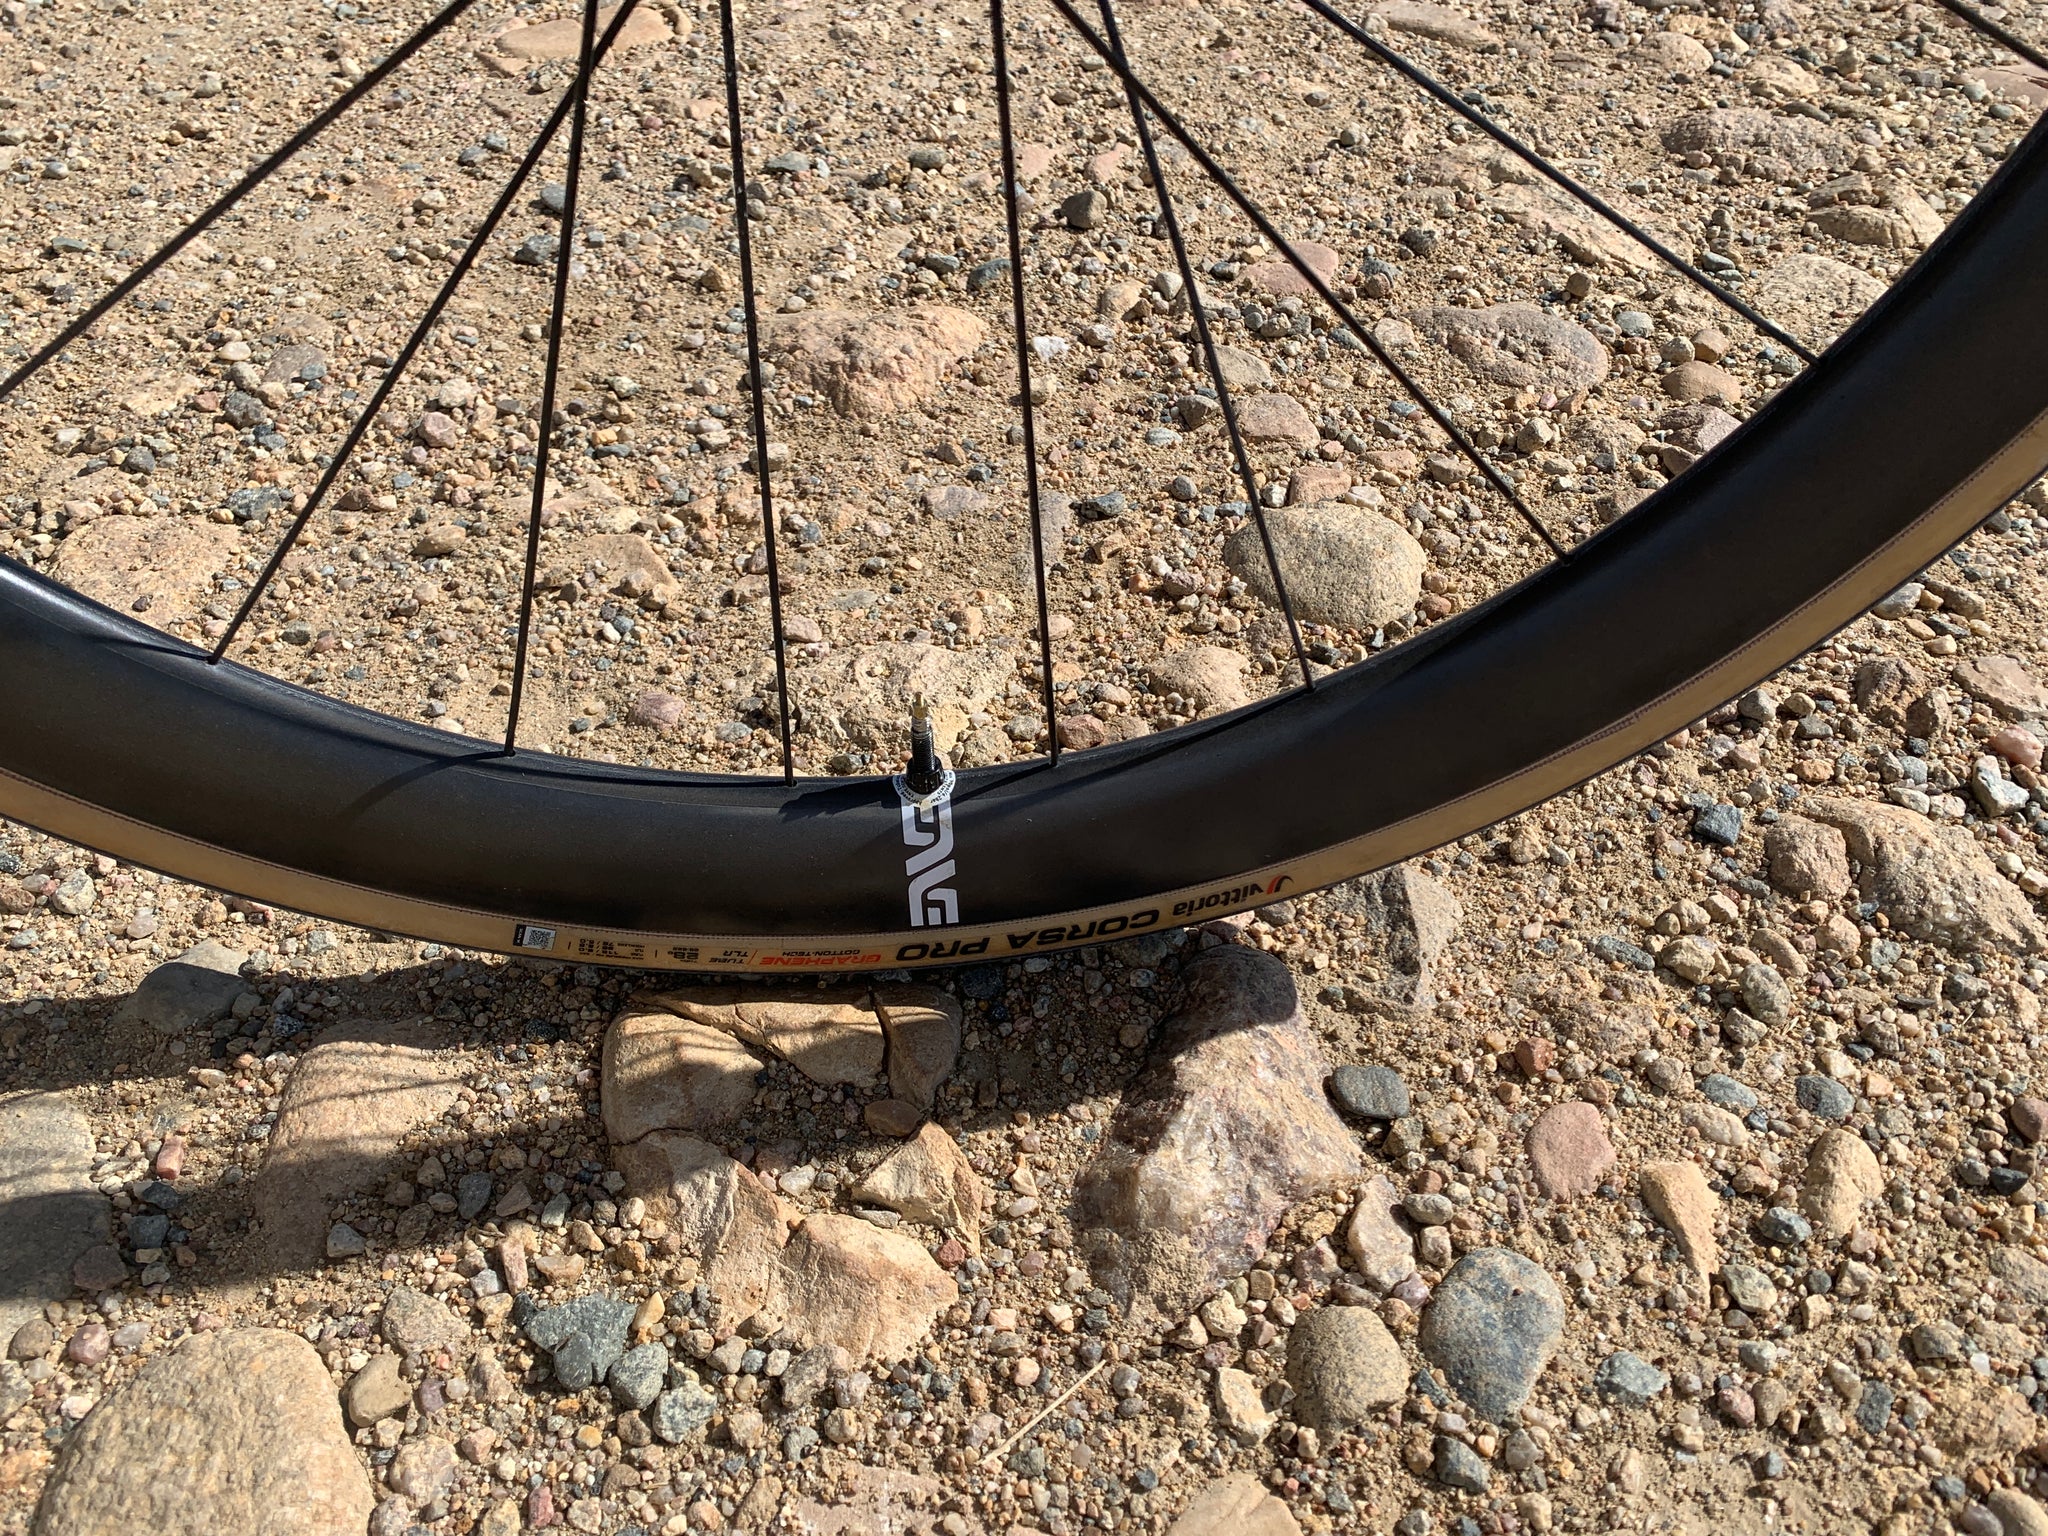 28mm road bike tire on gravel